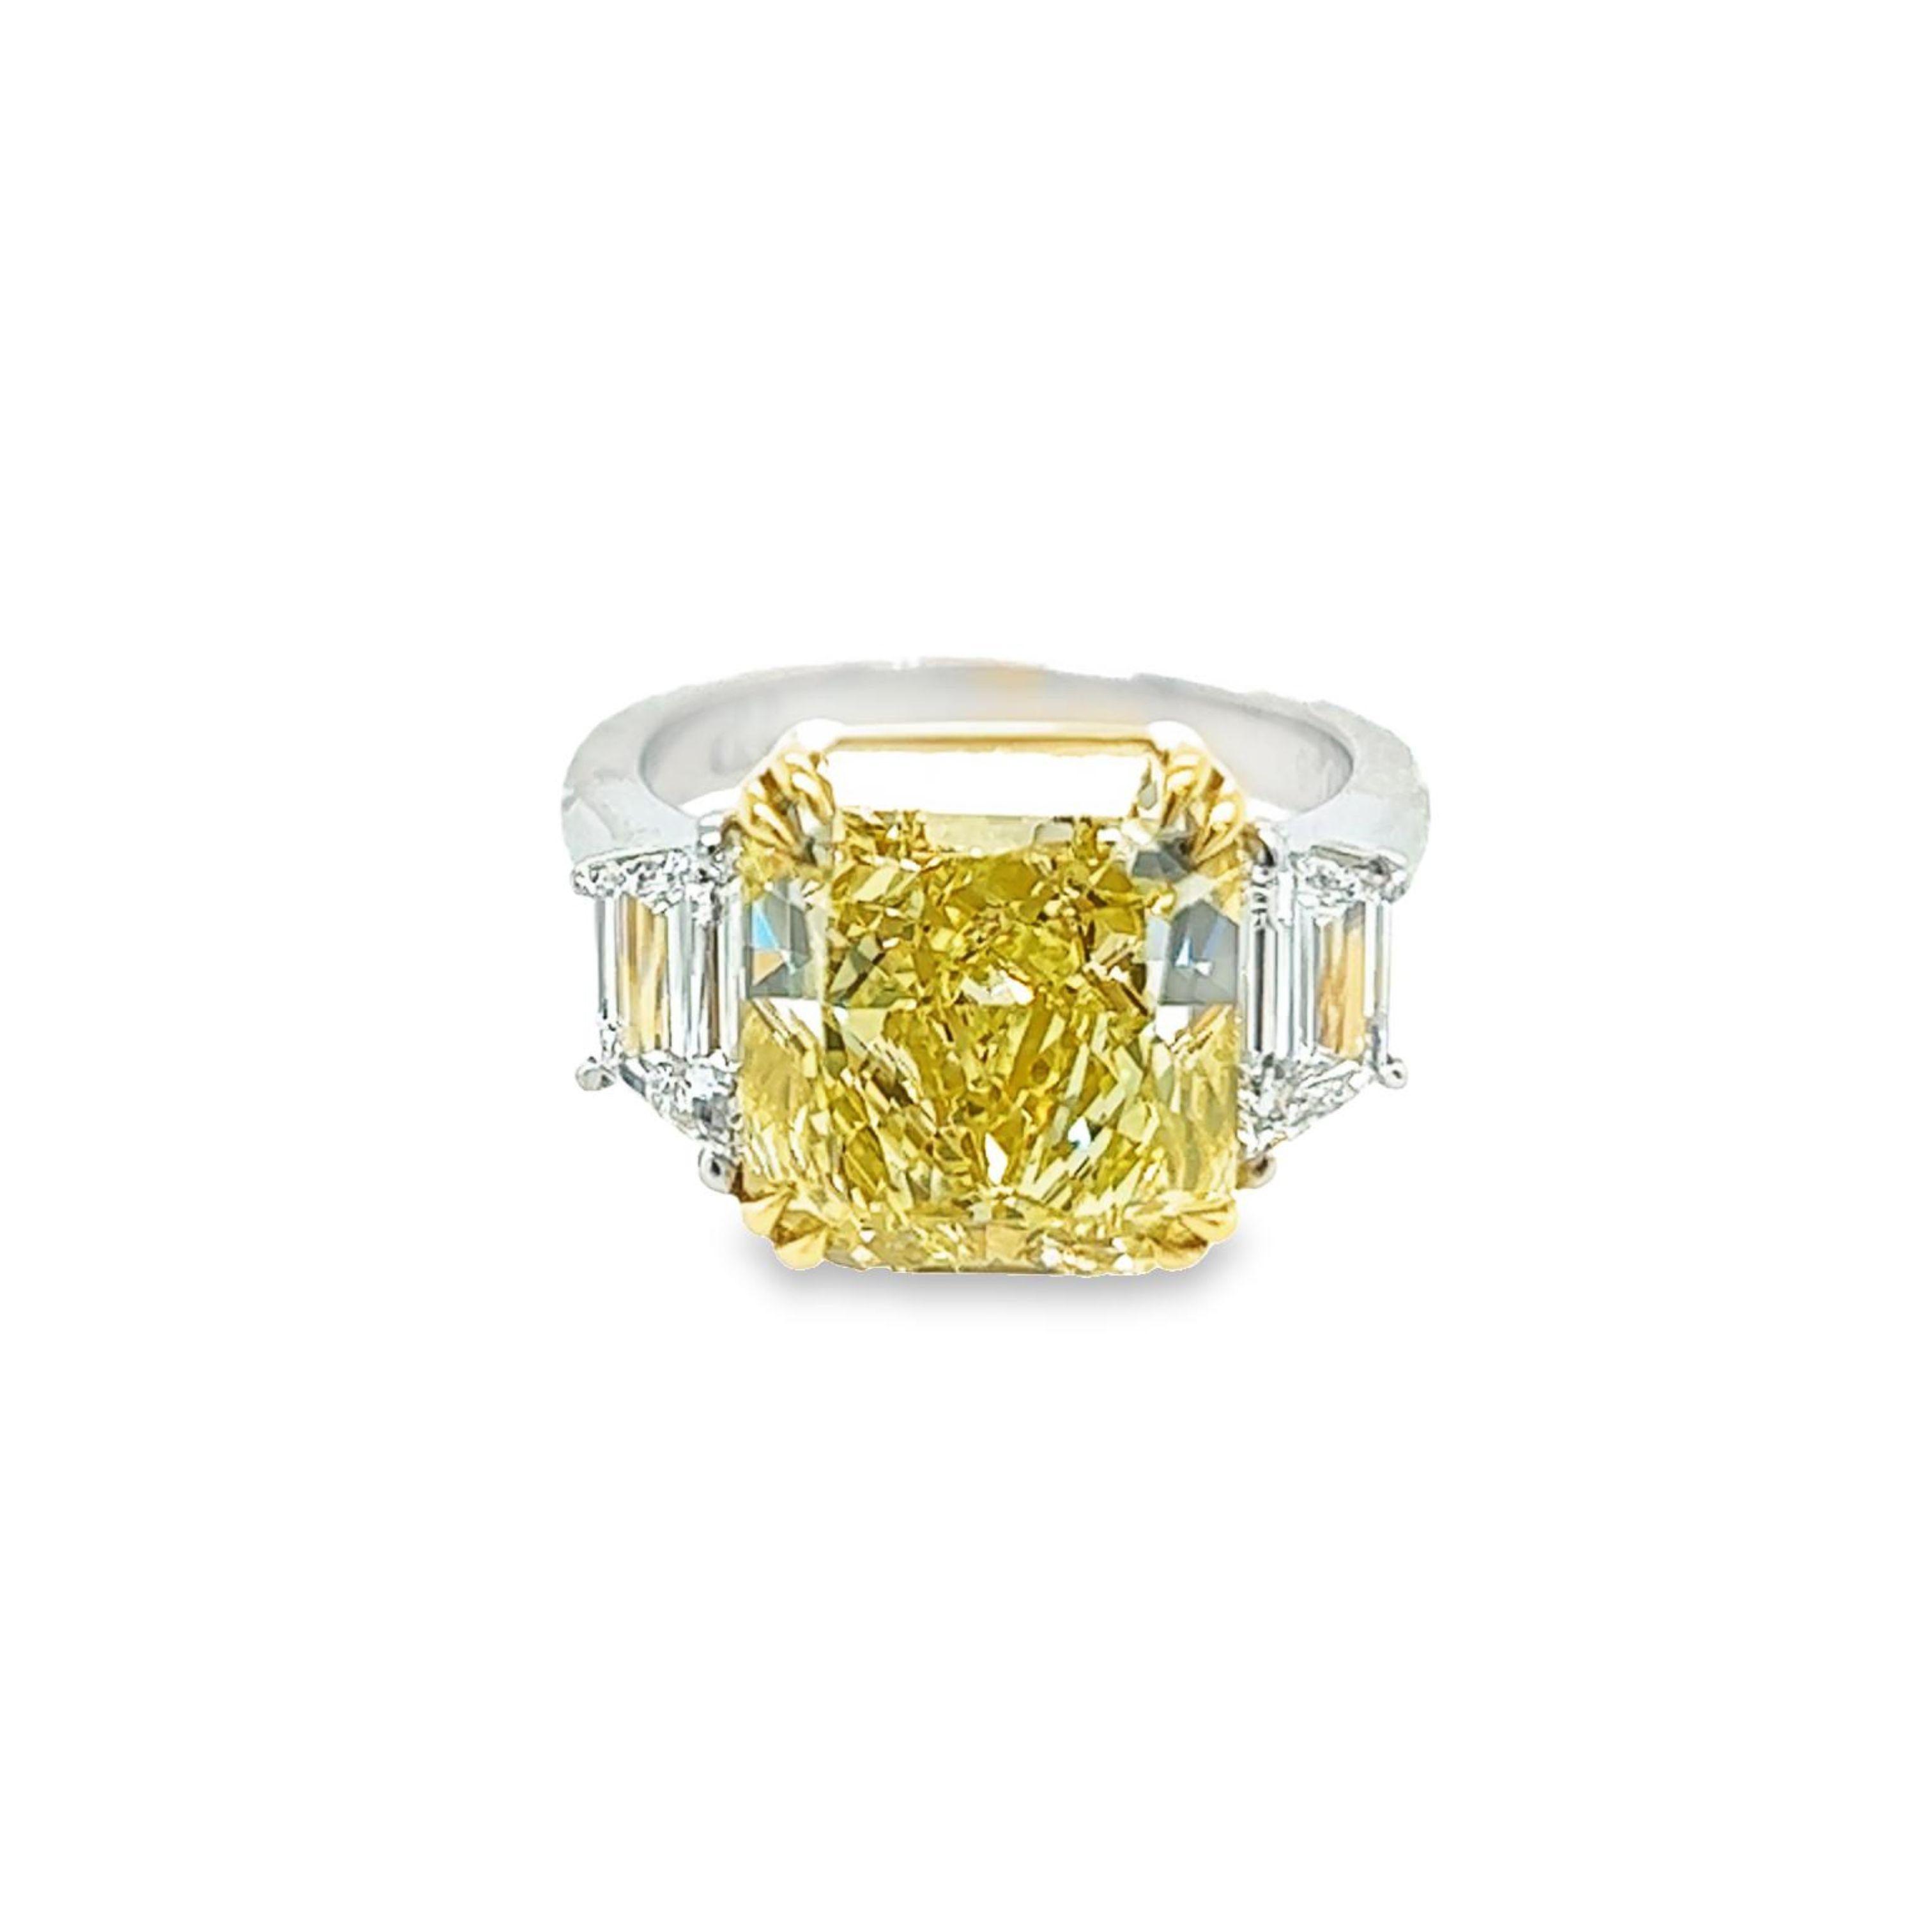 Rosenberg Diamonds and Co. 7,81 carats Radiant Cut Fancy Yellow VVS2 clarity est accompagné d'un certificat GIA. Cette magnifique taille rayonnante est sertie à la main dans une monture en platine et or jaune 18 carats avec une paire de pierres